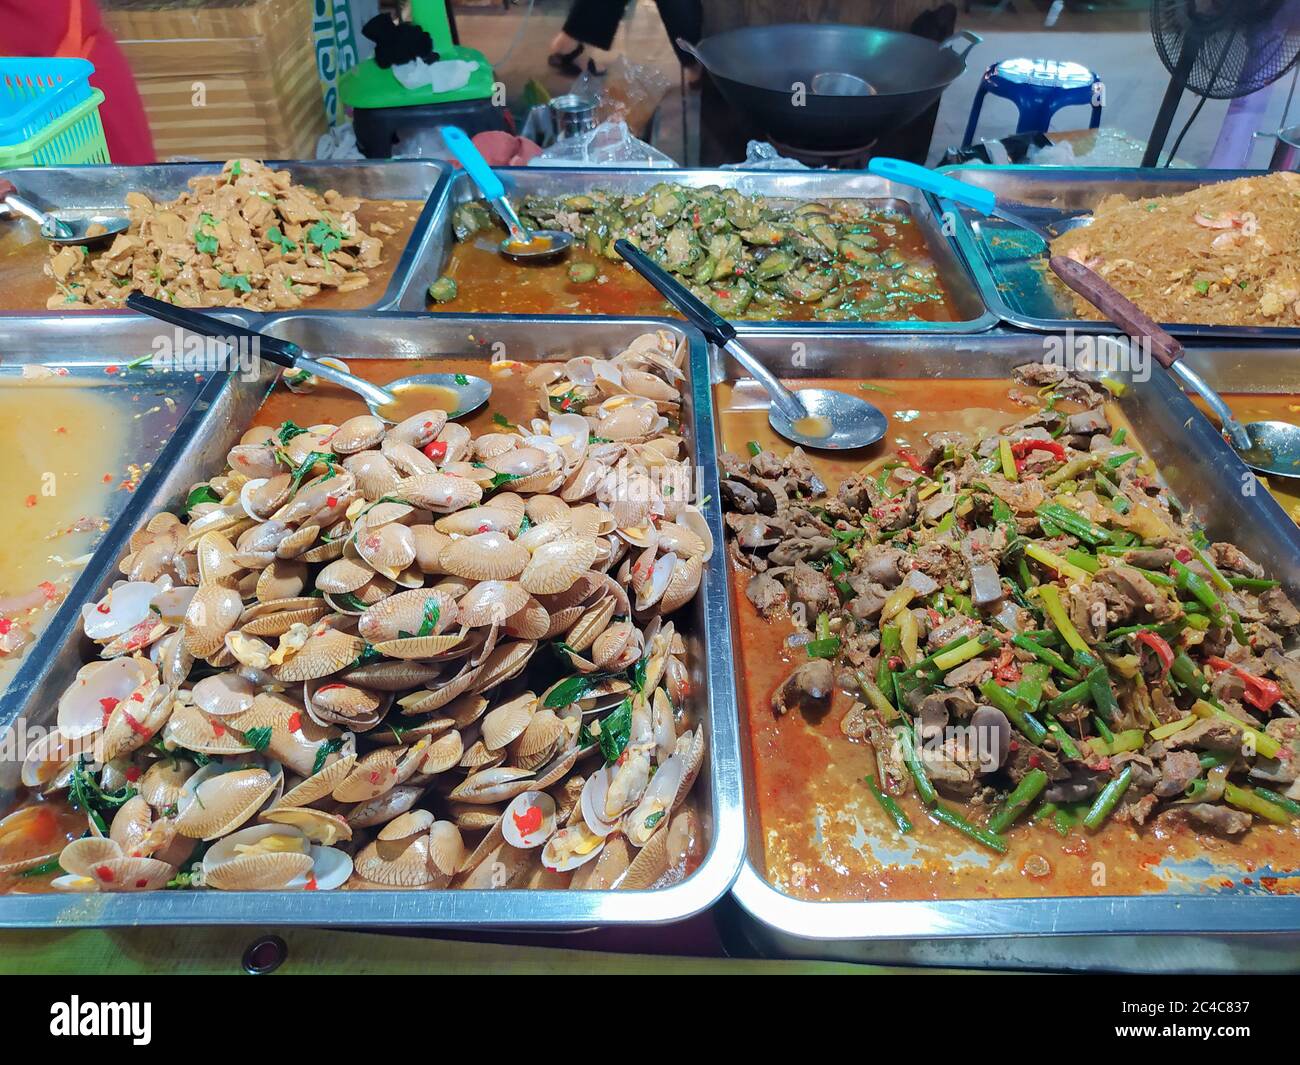 La nourriture traditionnelle était disponible sur le marché, Bangkok Thaïlande Banque D'Images